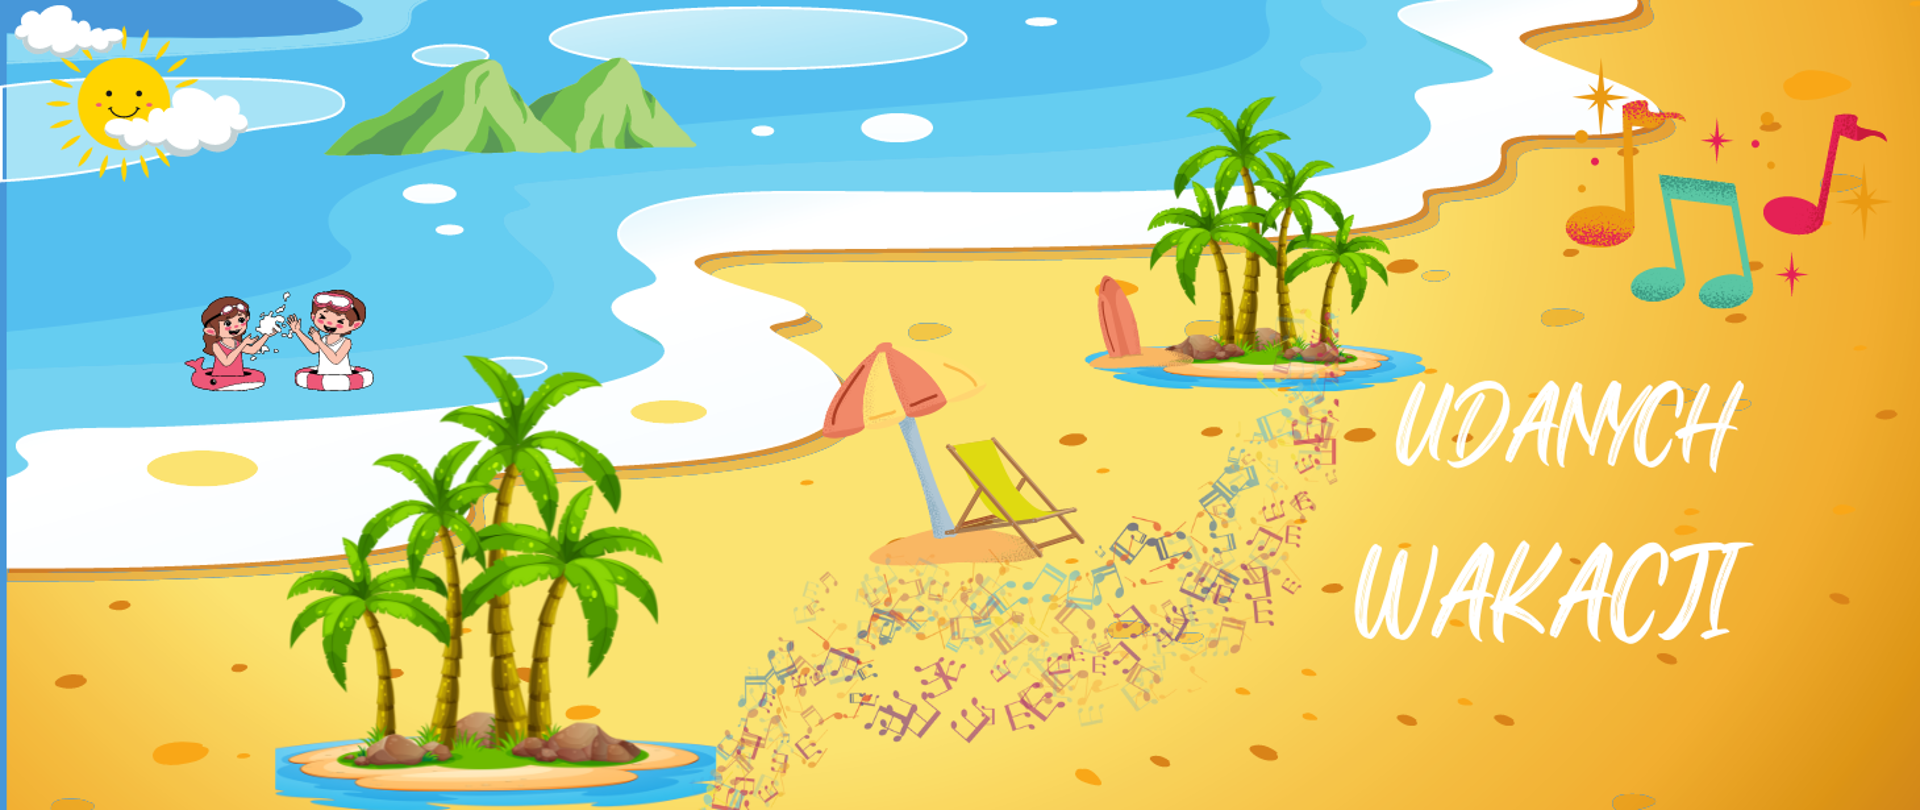 Baner na którym w obrazkowy graficzny sposób ukazano plażę i morze - po przekątnej lewa część przedstawia morze, a prawa plażę. W górnym lewym rogu słońce z dwiema chmurkami na tle morza oraz grafika dwójki dzieci z kółkami chlapiących się w morzu. Na morzu dwie zielone góry. Na dole z lewej strony widoczne cztery palmy, obok leżak z parasolem, dalej kolejne cztery palmy i kawałek czerwonej deski surfingowej. Na piasku widoczne kolorowe grafiki nut. Z prawej strony napis UDANYCH WAKACJI.